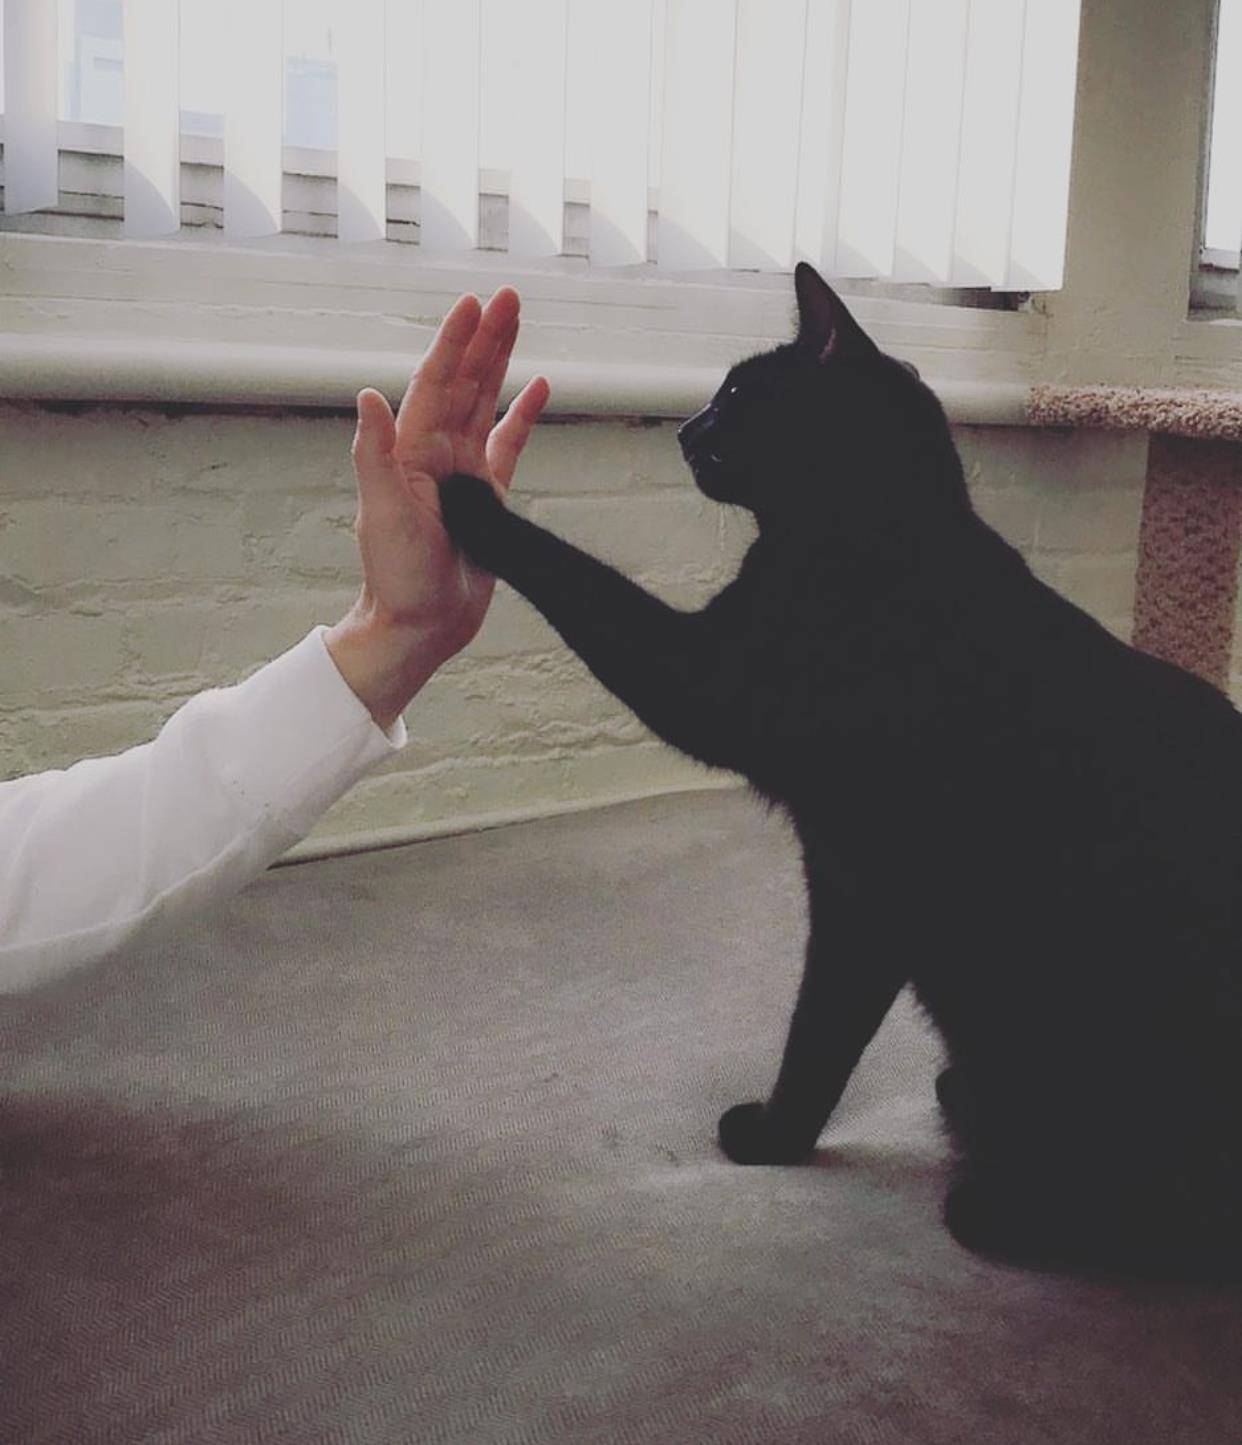 关爱流浪猫,美国某团体近日启动了"猫咪击掌"的有爱活动